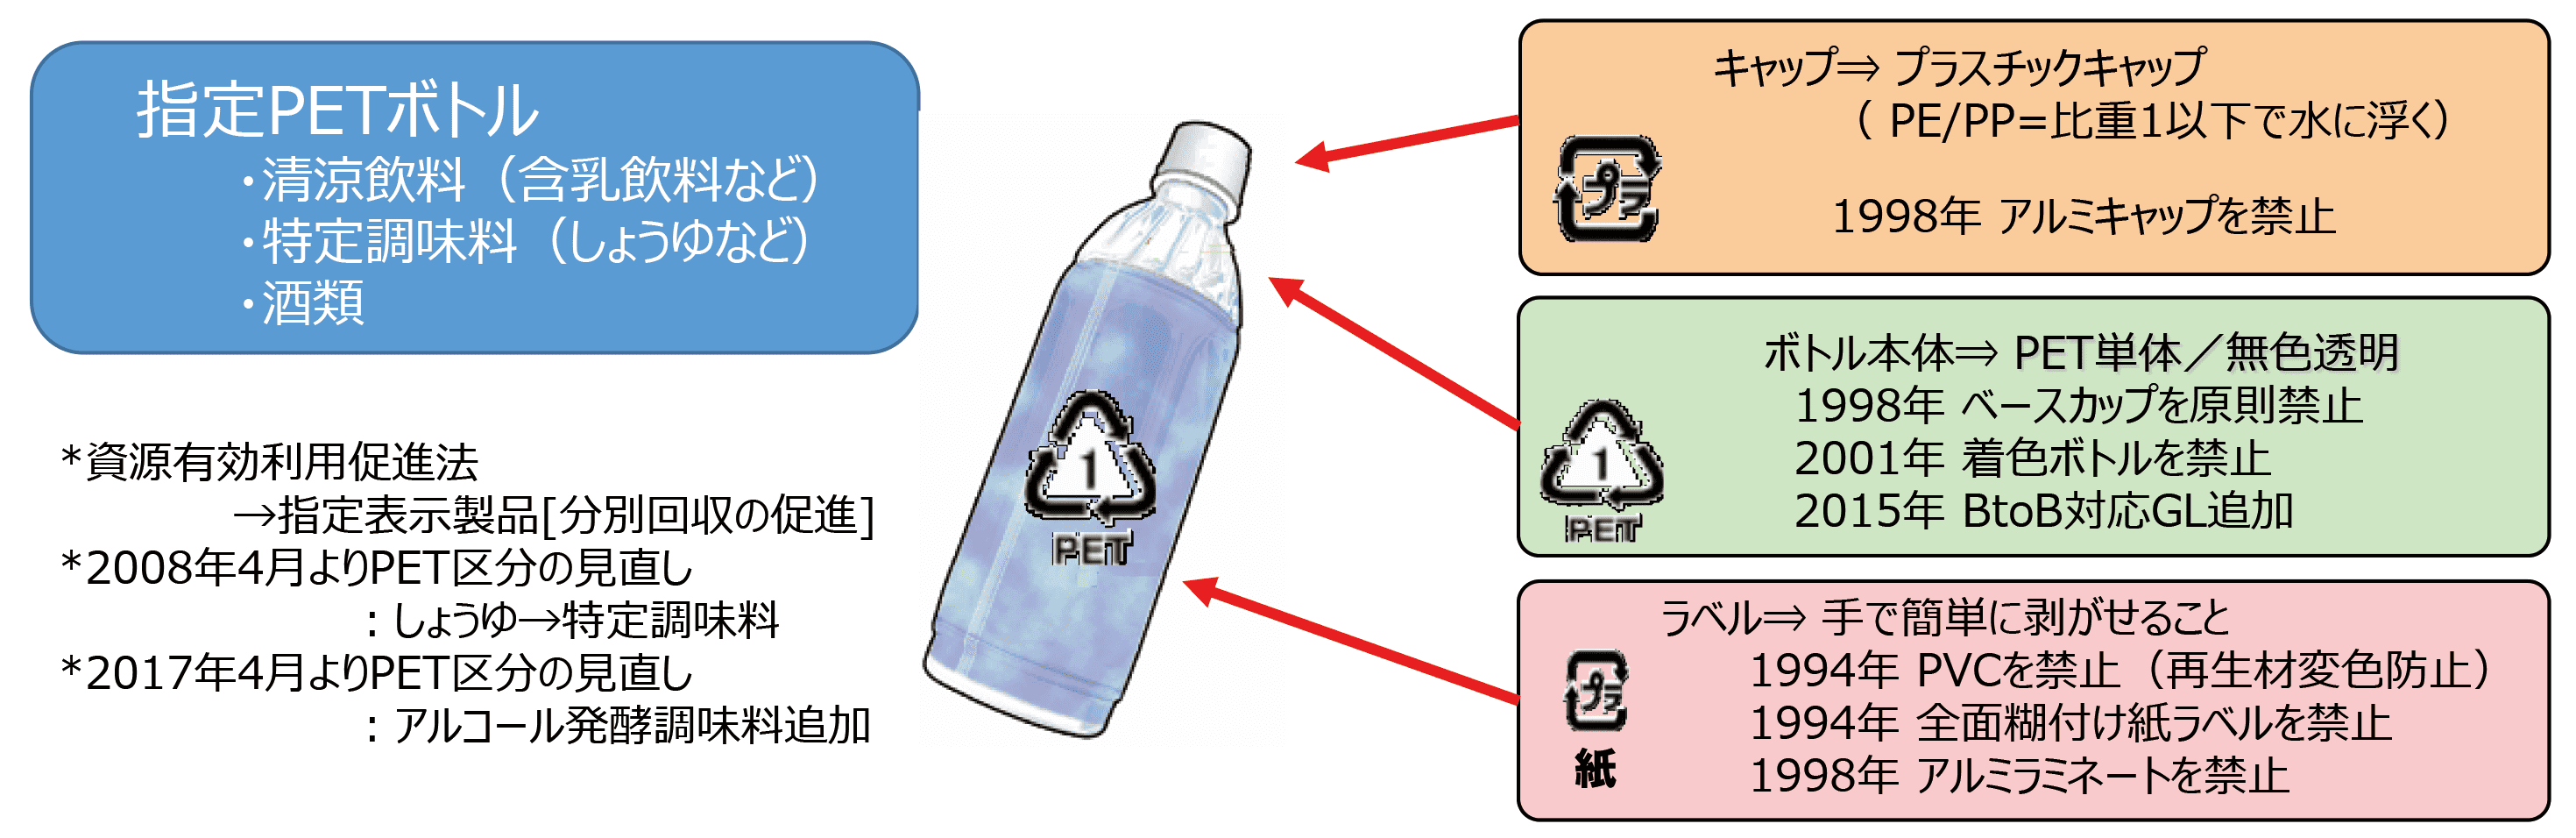 PETボトル自主設計ガイドラインの運用